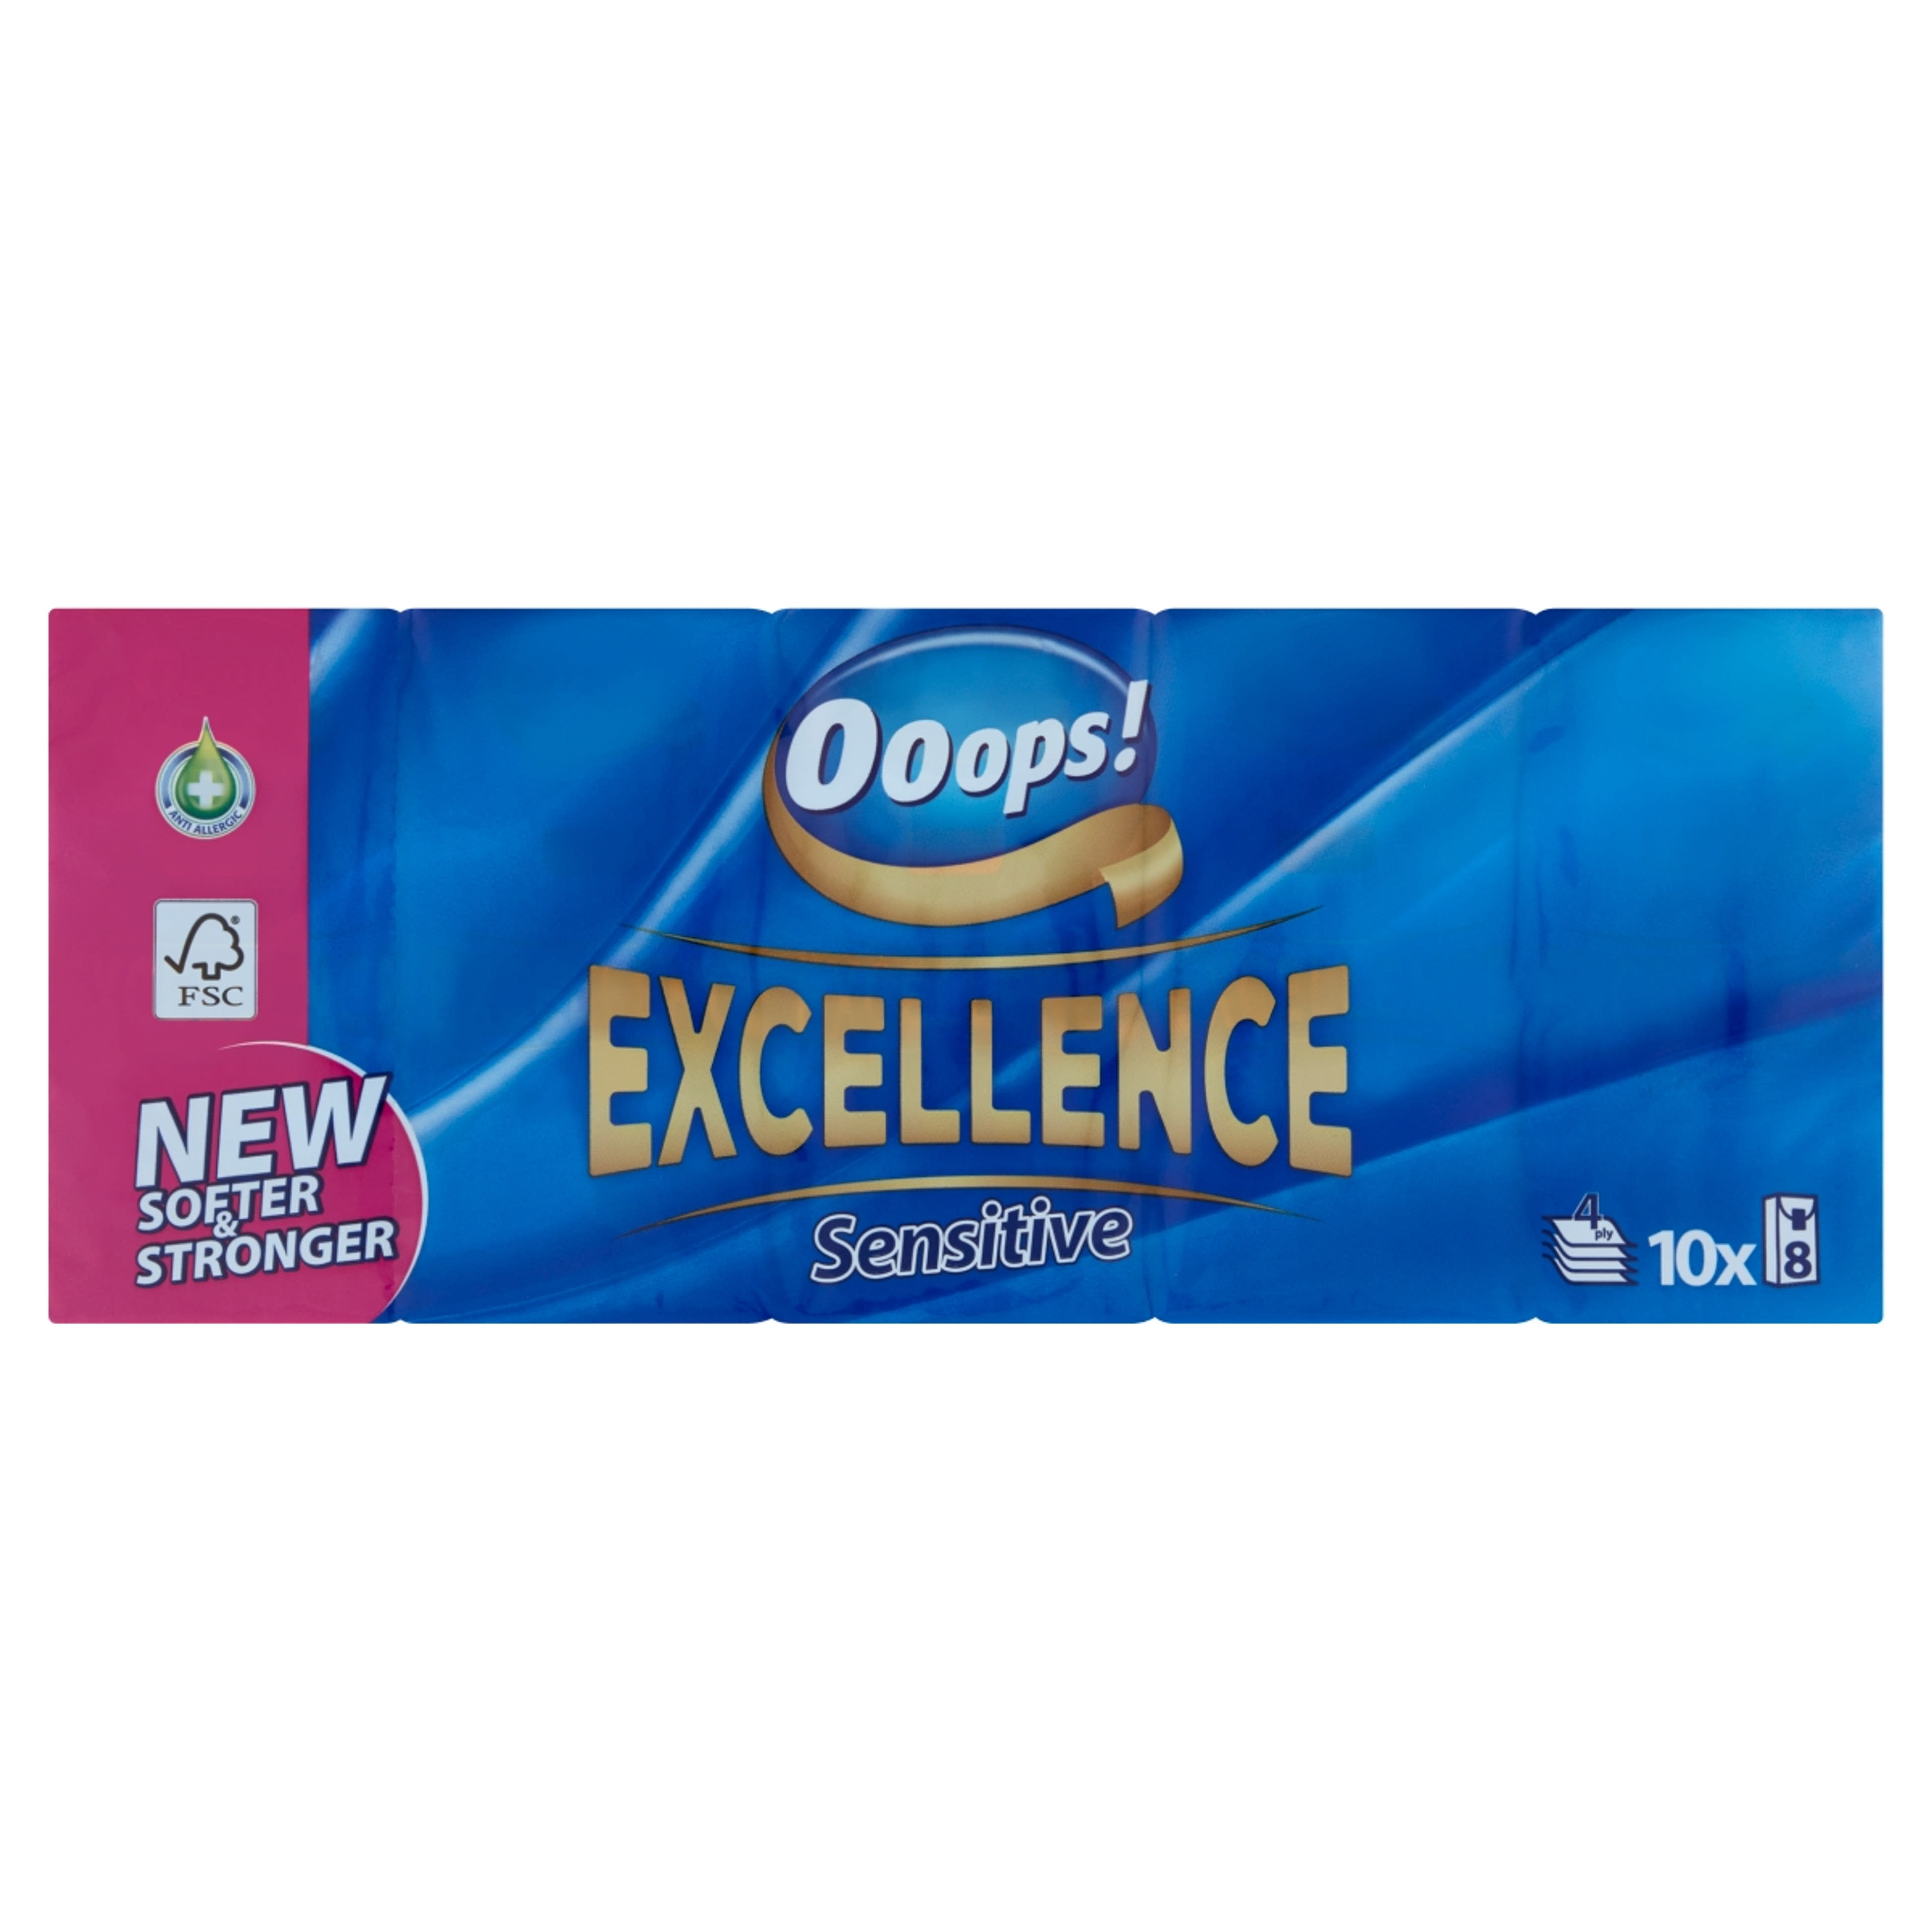 Ooops! Excellence Sensitive papír zsebkendő 4 rétegű 10x8 db - 80 db-1